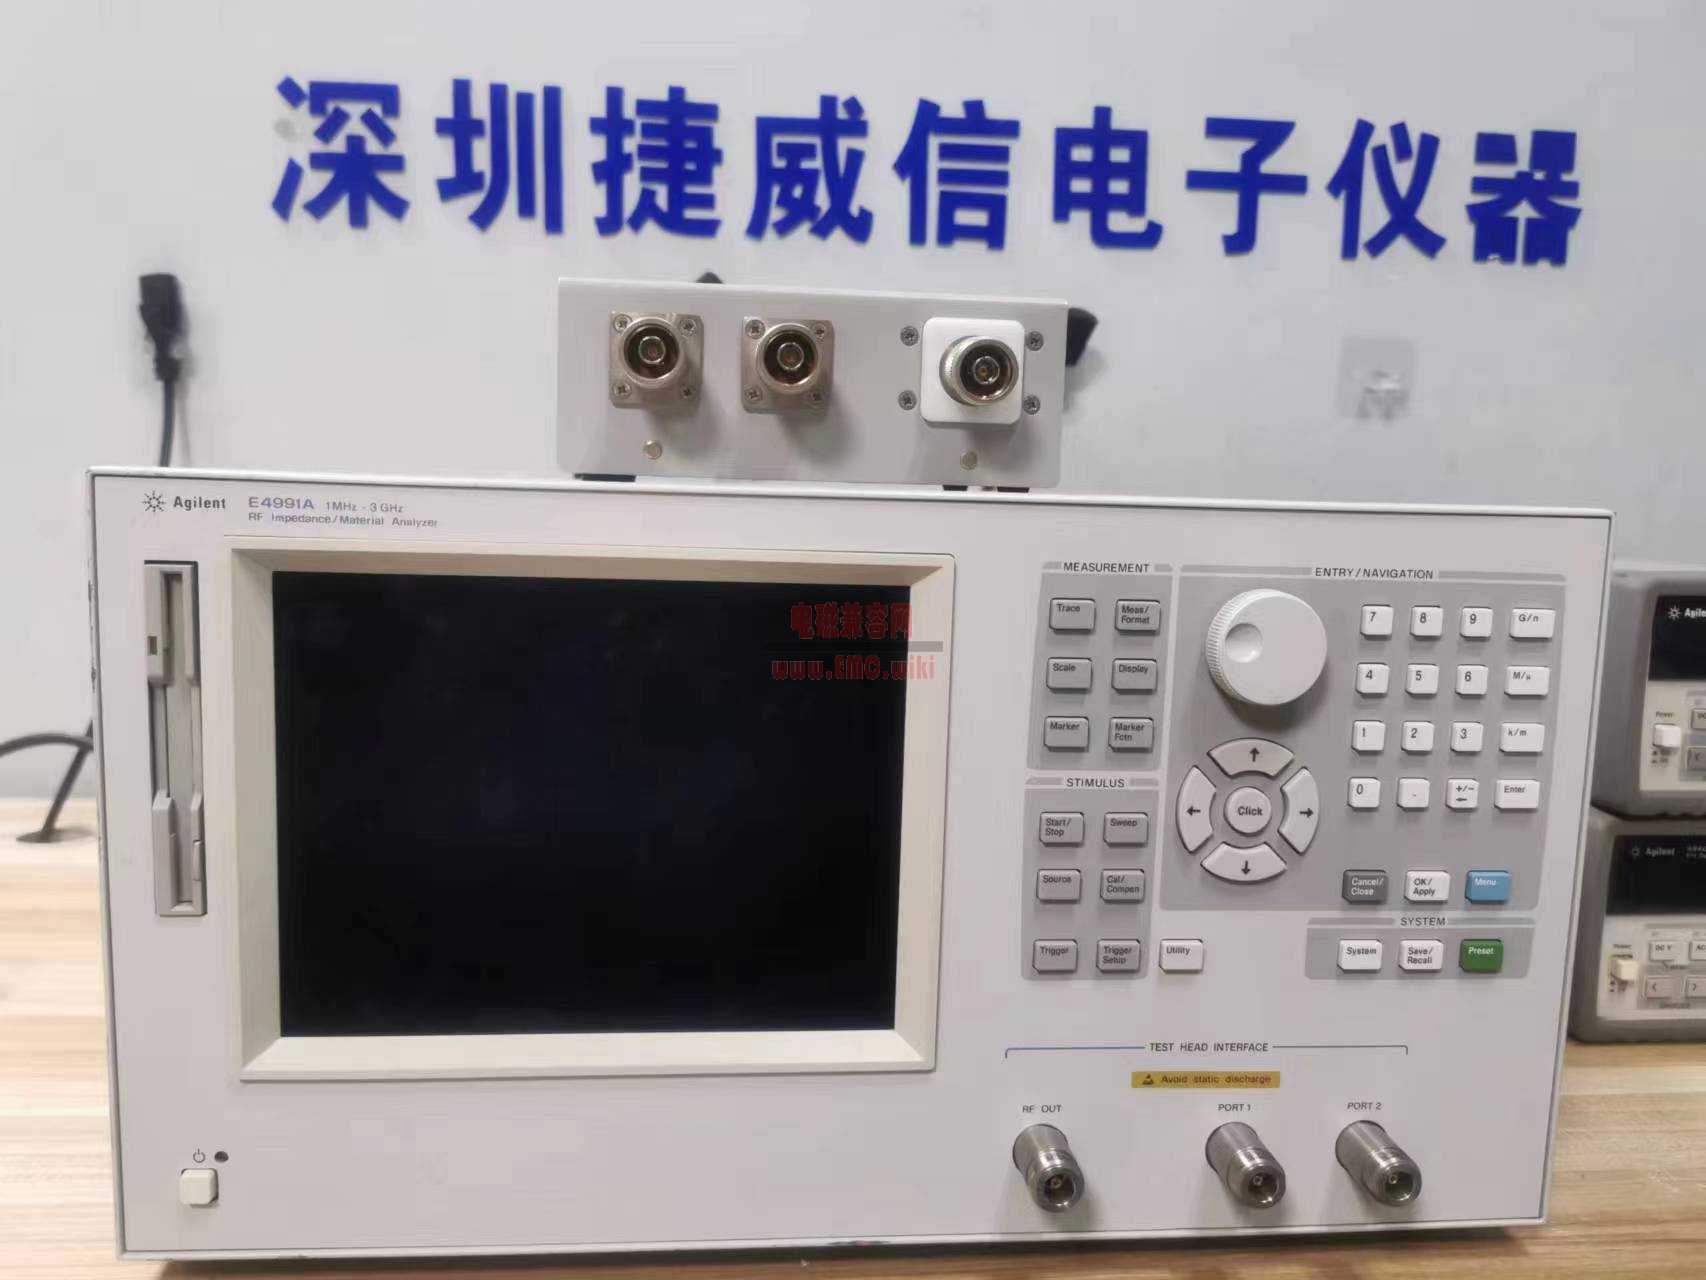 E4991A 安捷伦Agilent射频阻抗/材料分析仪